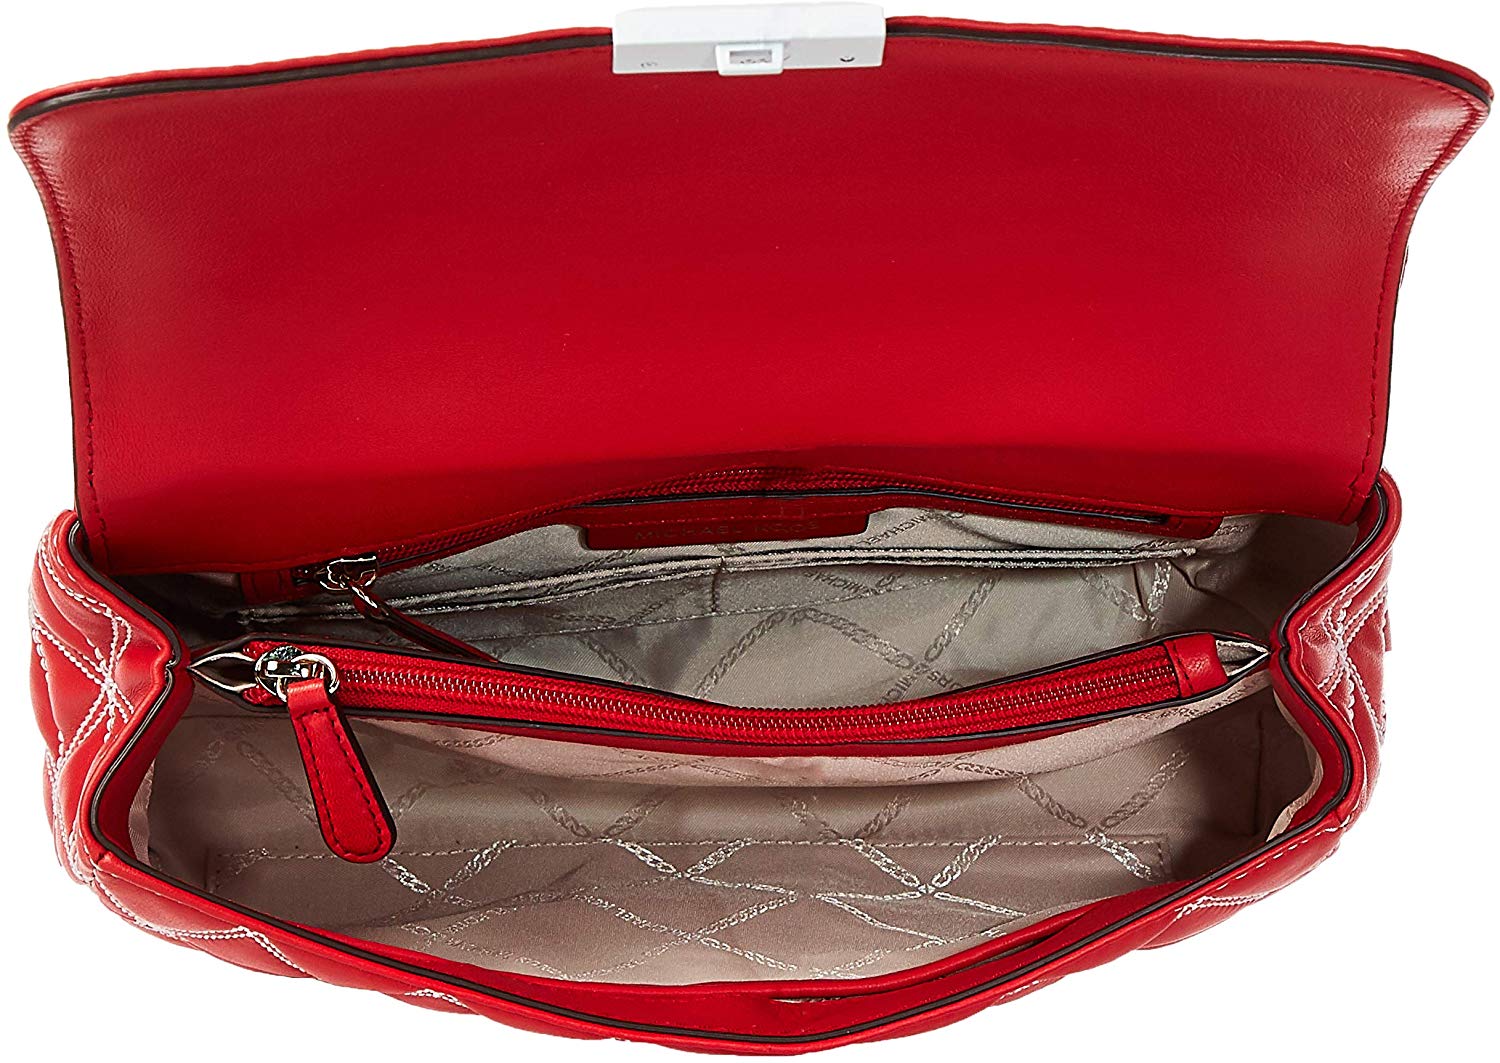 michael kors red leather handbag